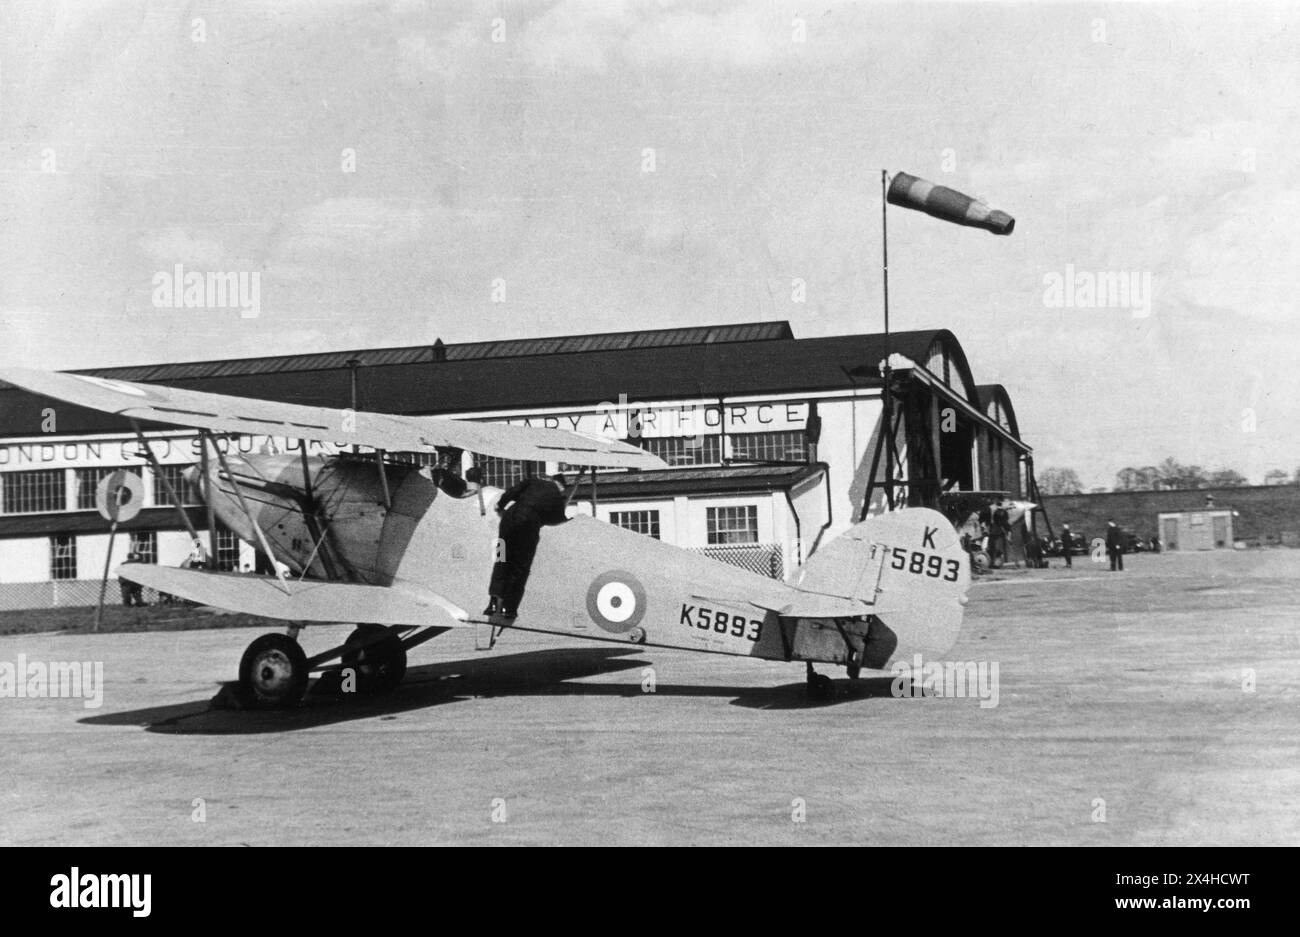 Hendon, London. 1935: Ein Hawker Hart-Trainer-Doppeldecker der 601 (County of London) Squadron, Auxiliary Air Force, parkte vor dem Hangar der Staffel bei der RAF Hendon im Nordwesten Londons. Dieses Flugzeug mit der Zulassungsnummer K5893 wurde von Vickers gebaut und mit einem Rolls Royce Kestrel X-Triebwerk ausgestattet. No. 601 Squadron war eine Reserve-Geschwader der Royal Air Force, die im Oktober 1925 bei der RAF Northolt von einer Gruppe wohlhabender junger aristokratischer Männer gebildet wurde, die auch Amateurflieger waren. Das Geschwader erhielt den Spitznamen „The Millionaires Squadron“. Stockfoto